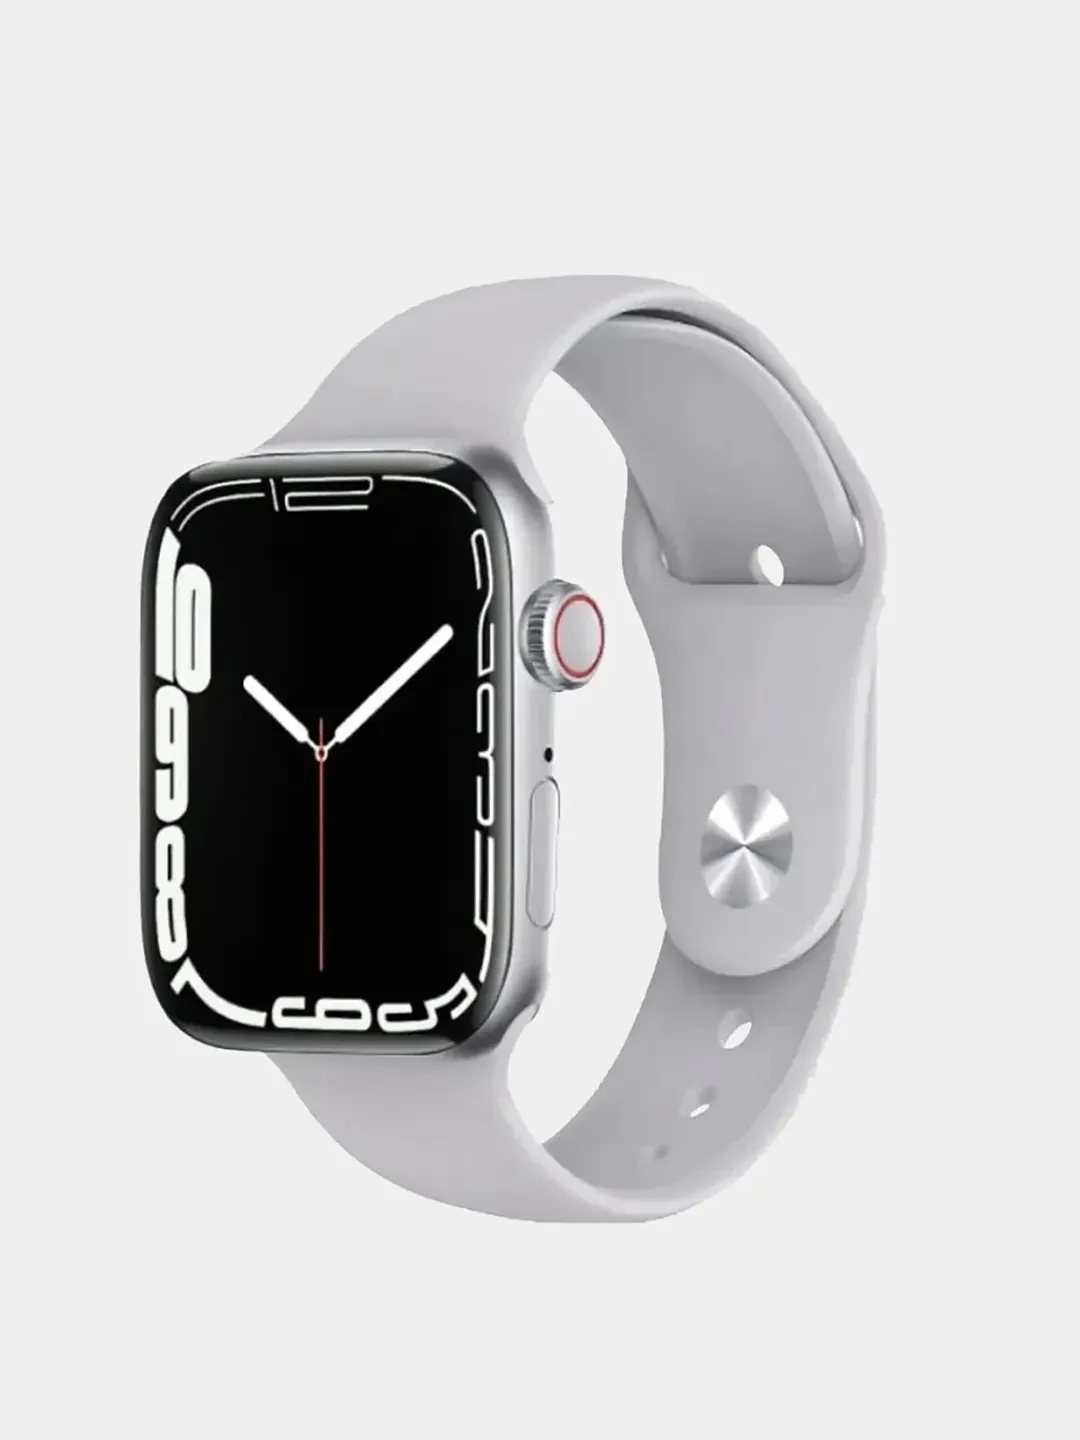 Часы a8 pro. Смарт часы hw22. M16 Mini смарт часы. Apple watch se 40mm. Hw22 Smart watch 6.